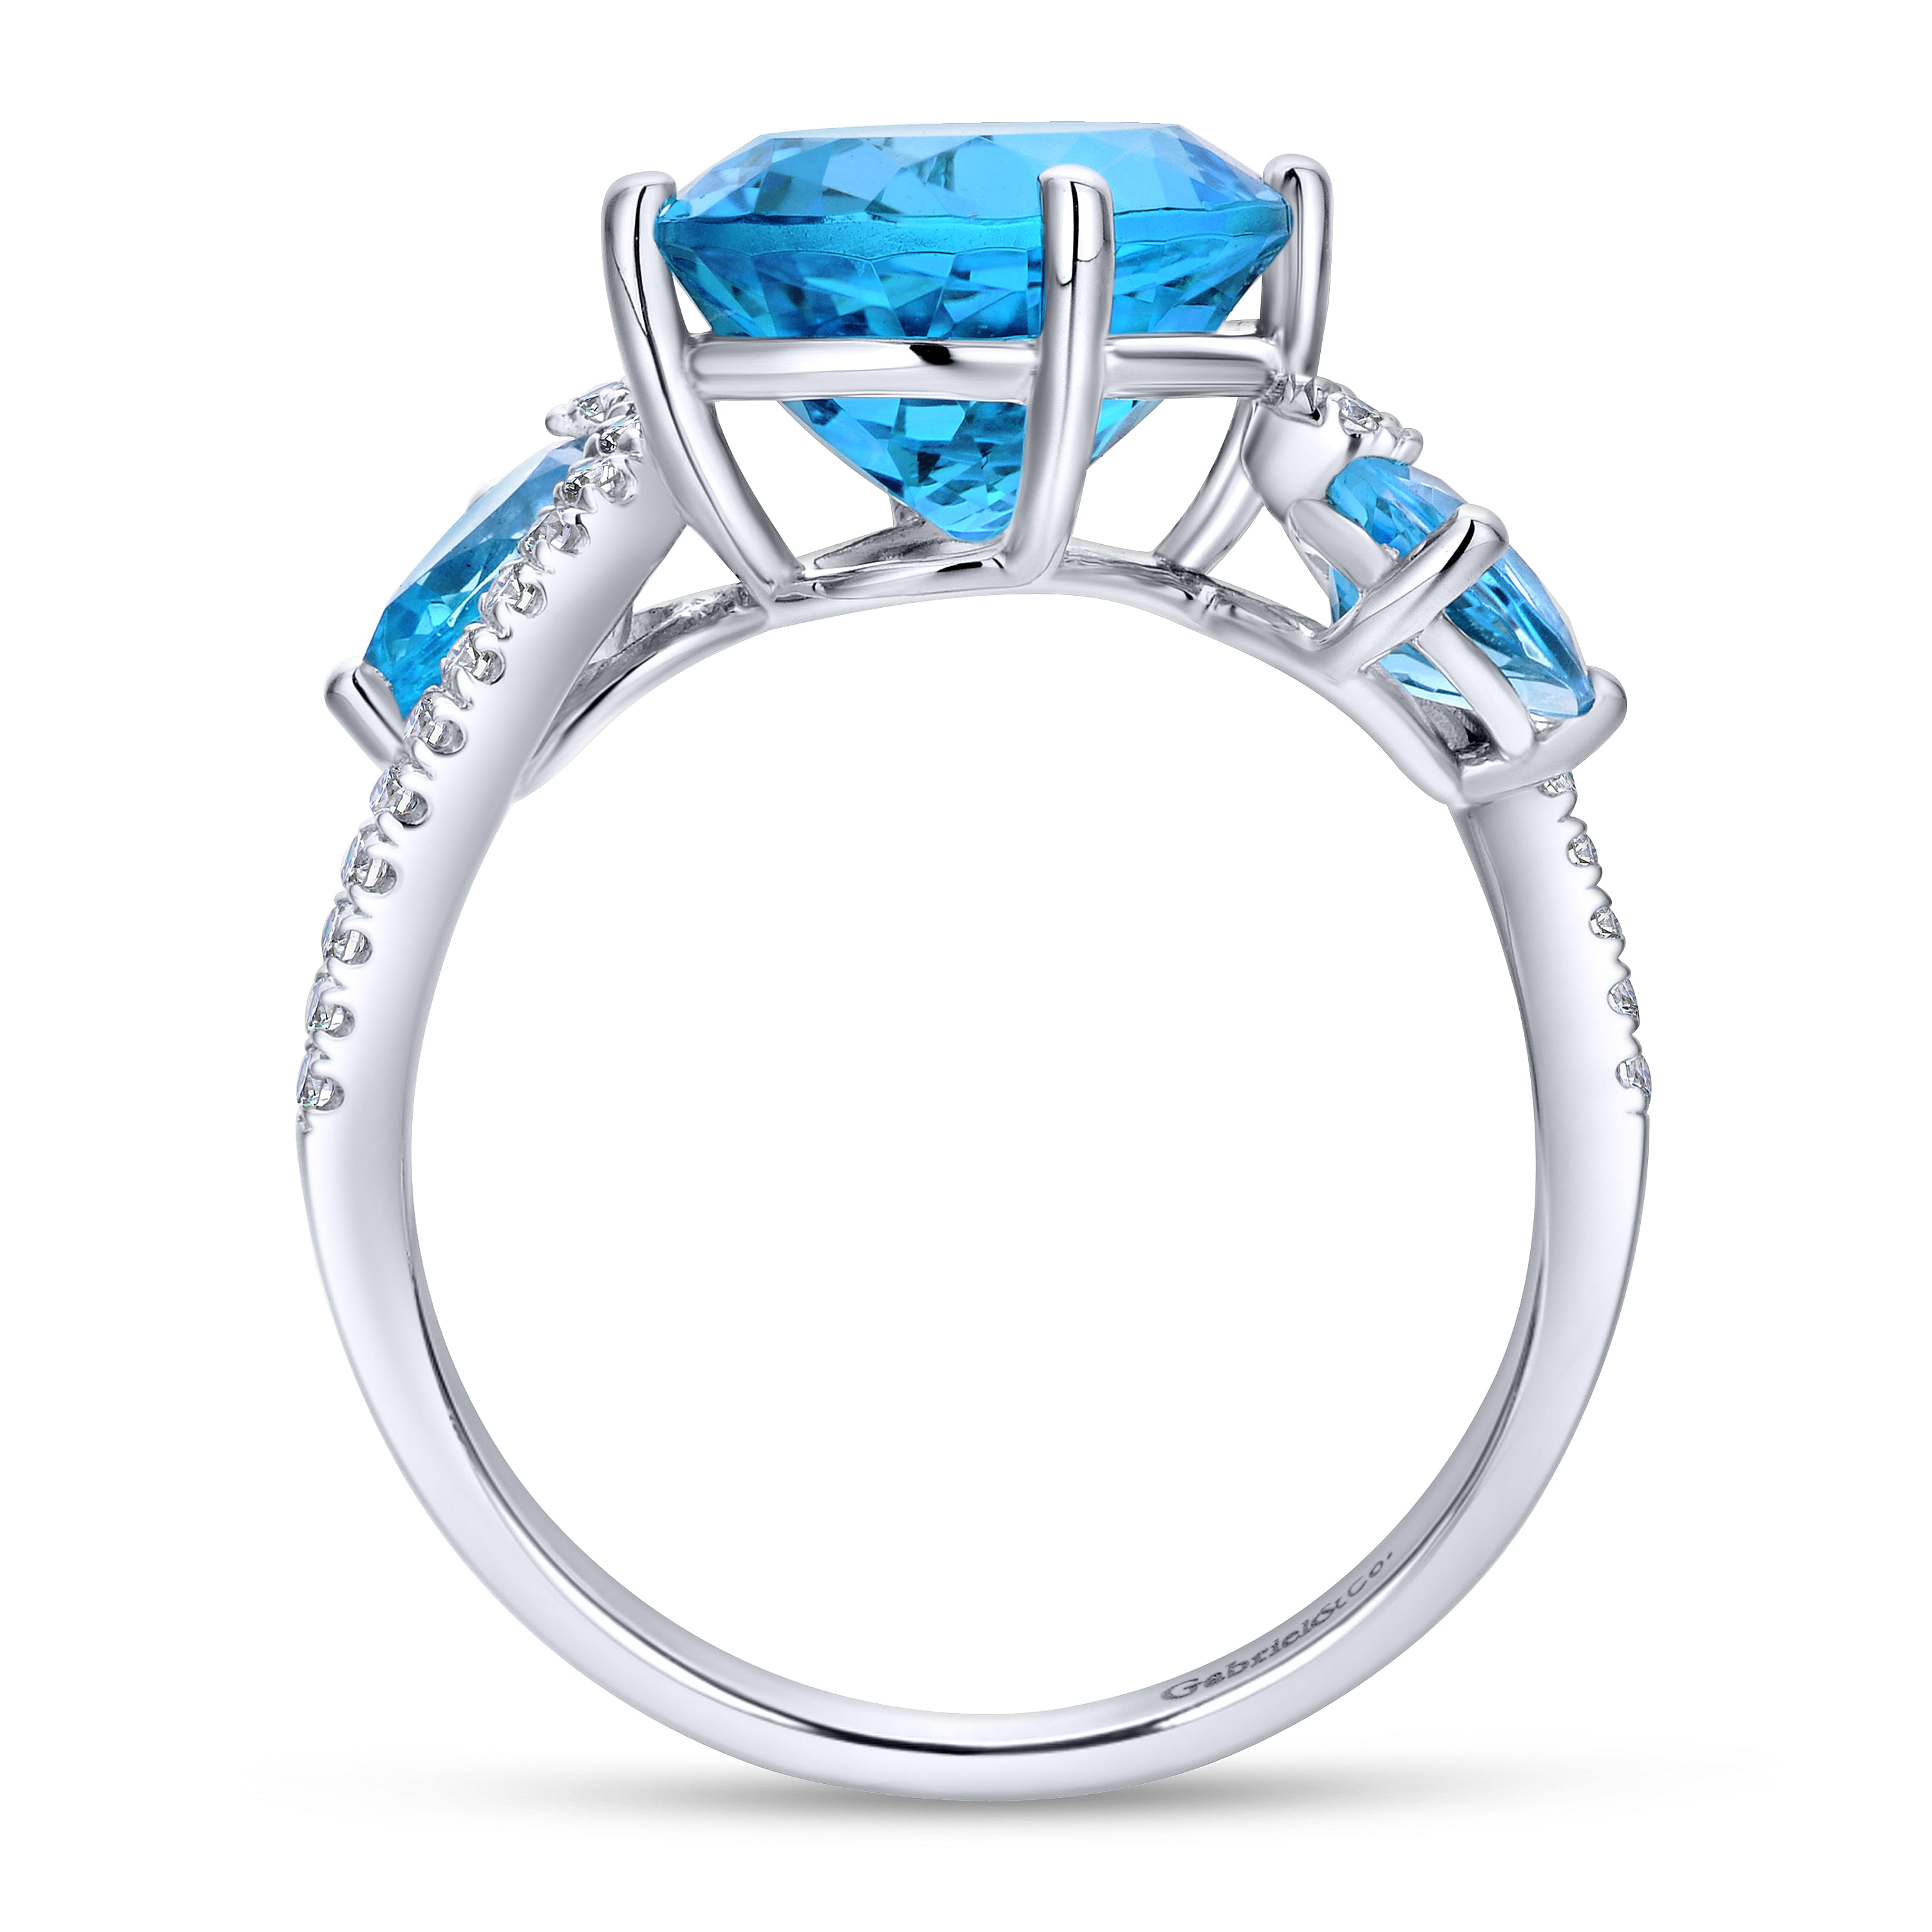 14K White Gold Diamond and Blue Topaz Fashion Ladies Ring